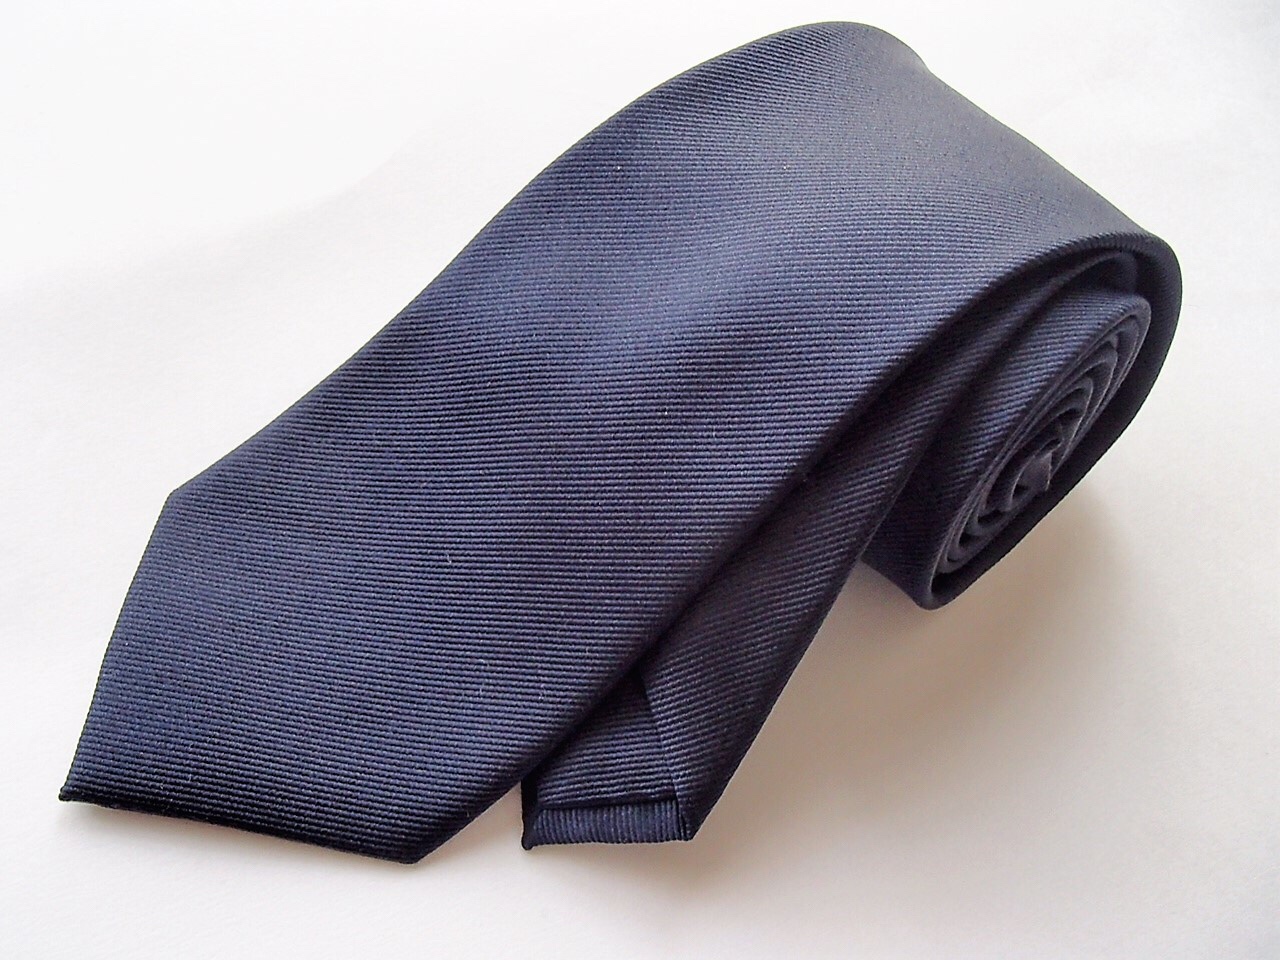 ユニクロのシルクネクタイは最高級品のクオリティ 服ログ